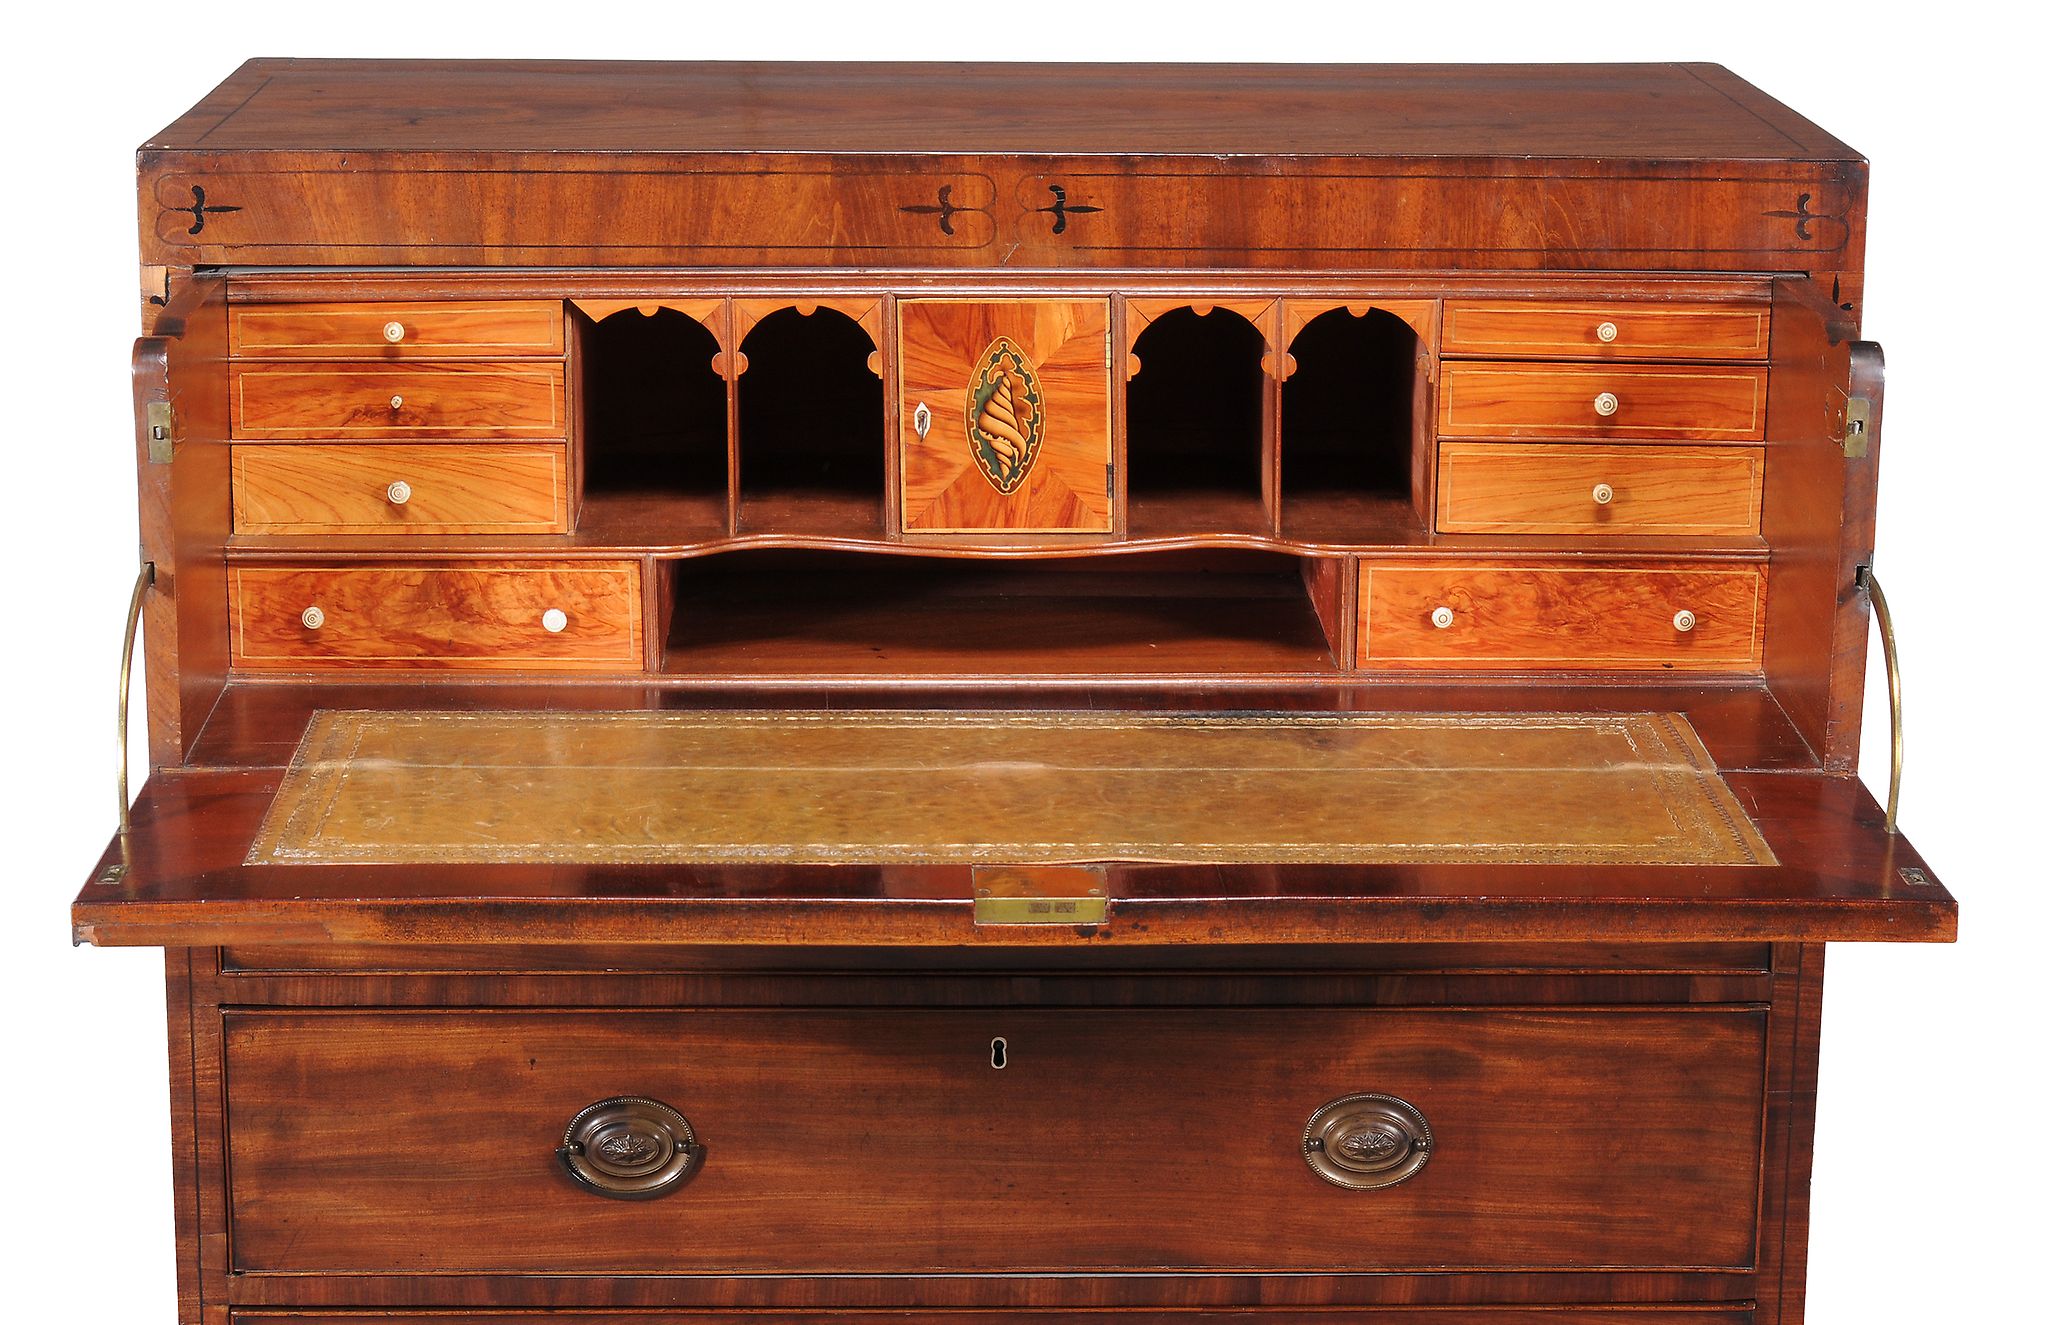 Ω A Regency mahogany and ebony strung secretaire chest of drawers, circa 1820, the secretaire drawer - Image 2 of 2